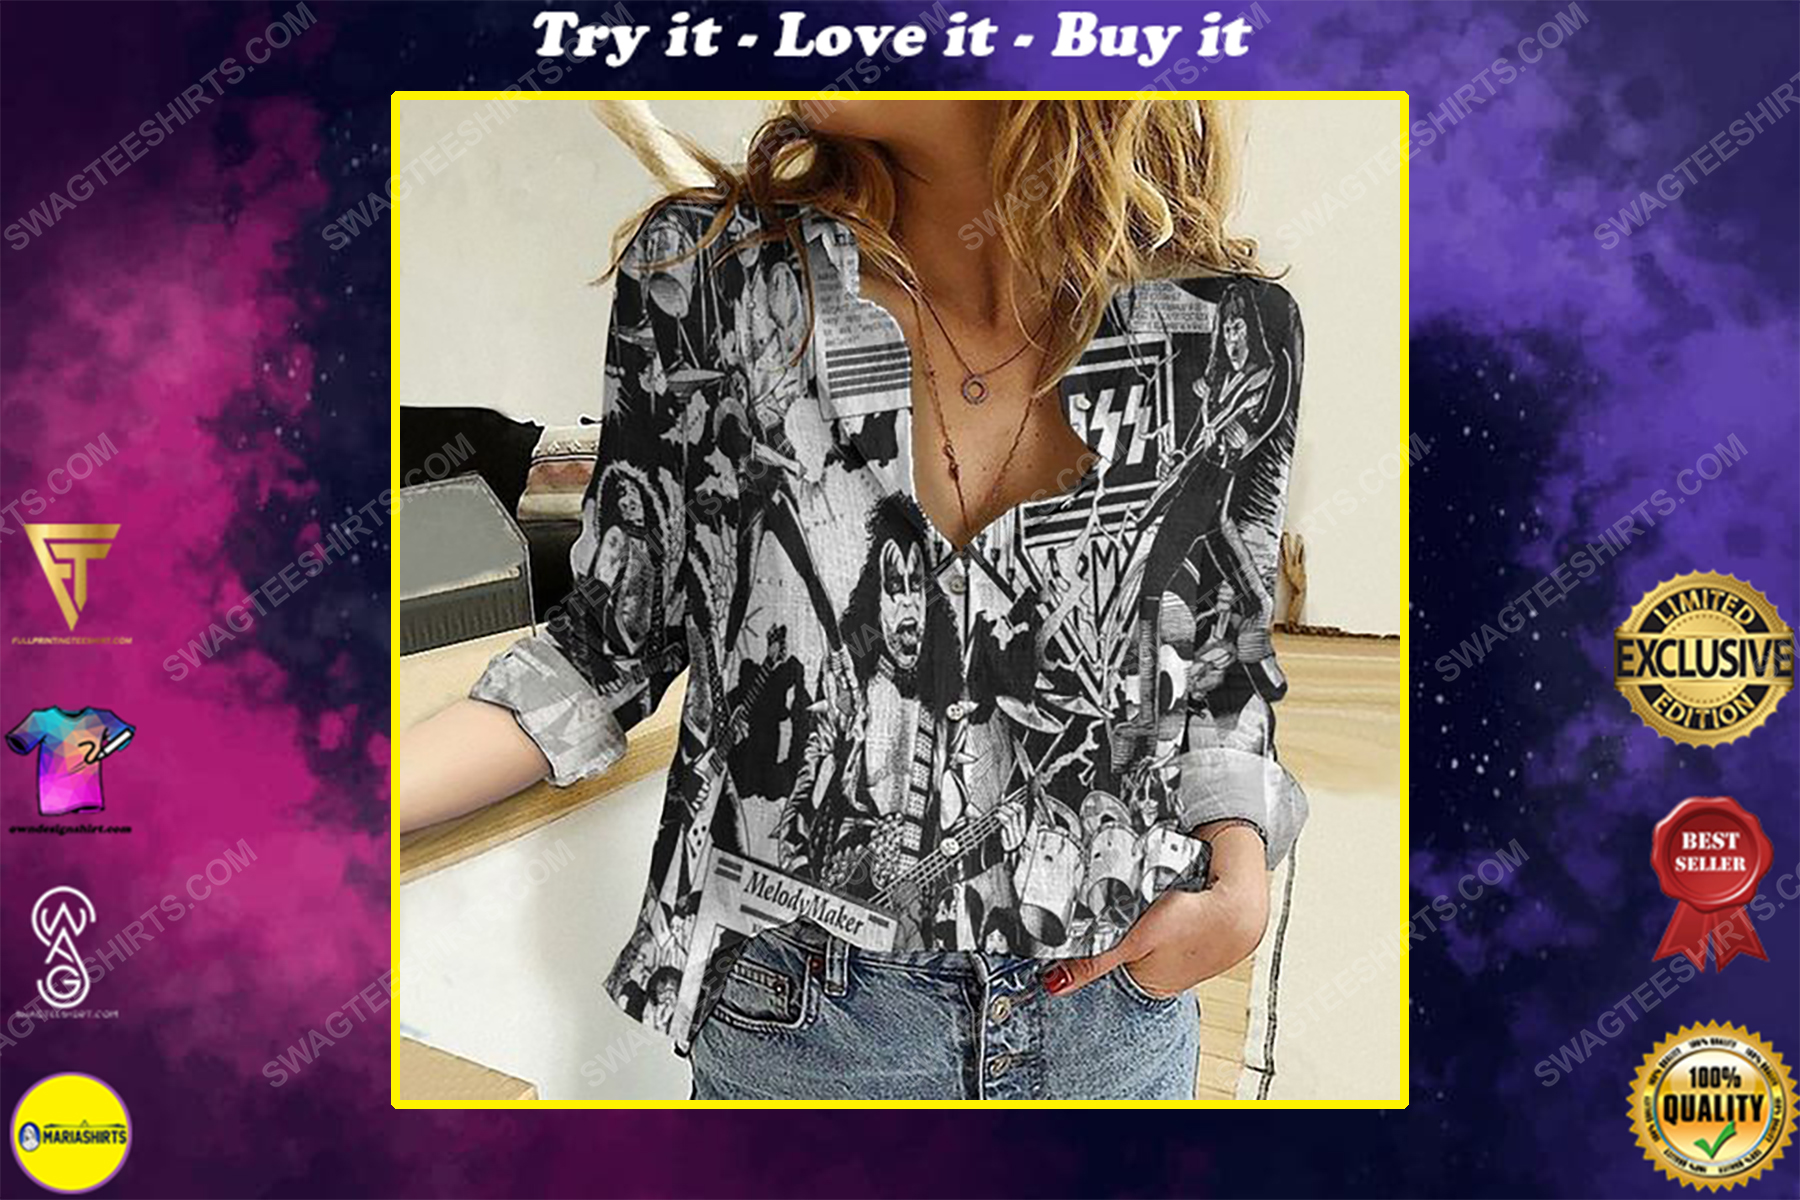 Kiss rock band melody maker fully printed poly cotton casual shirt